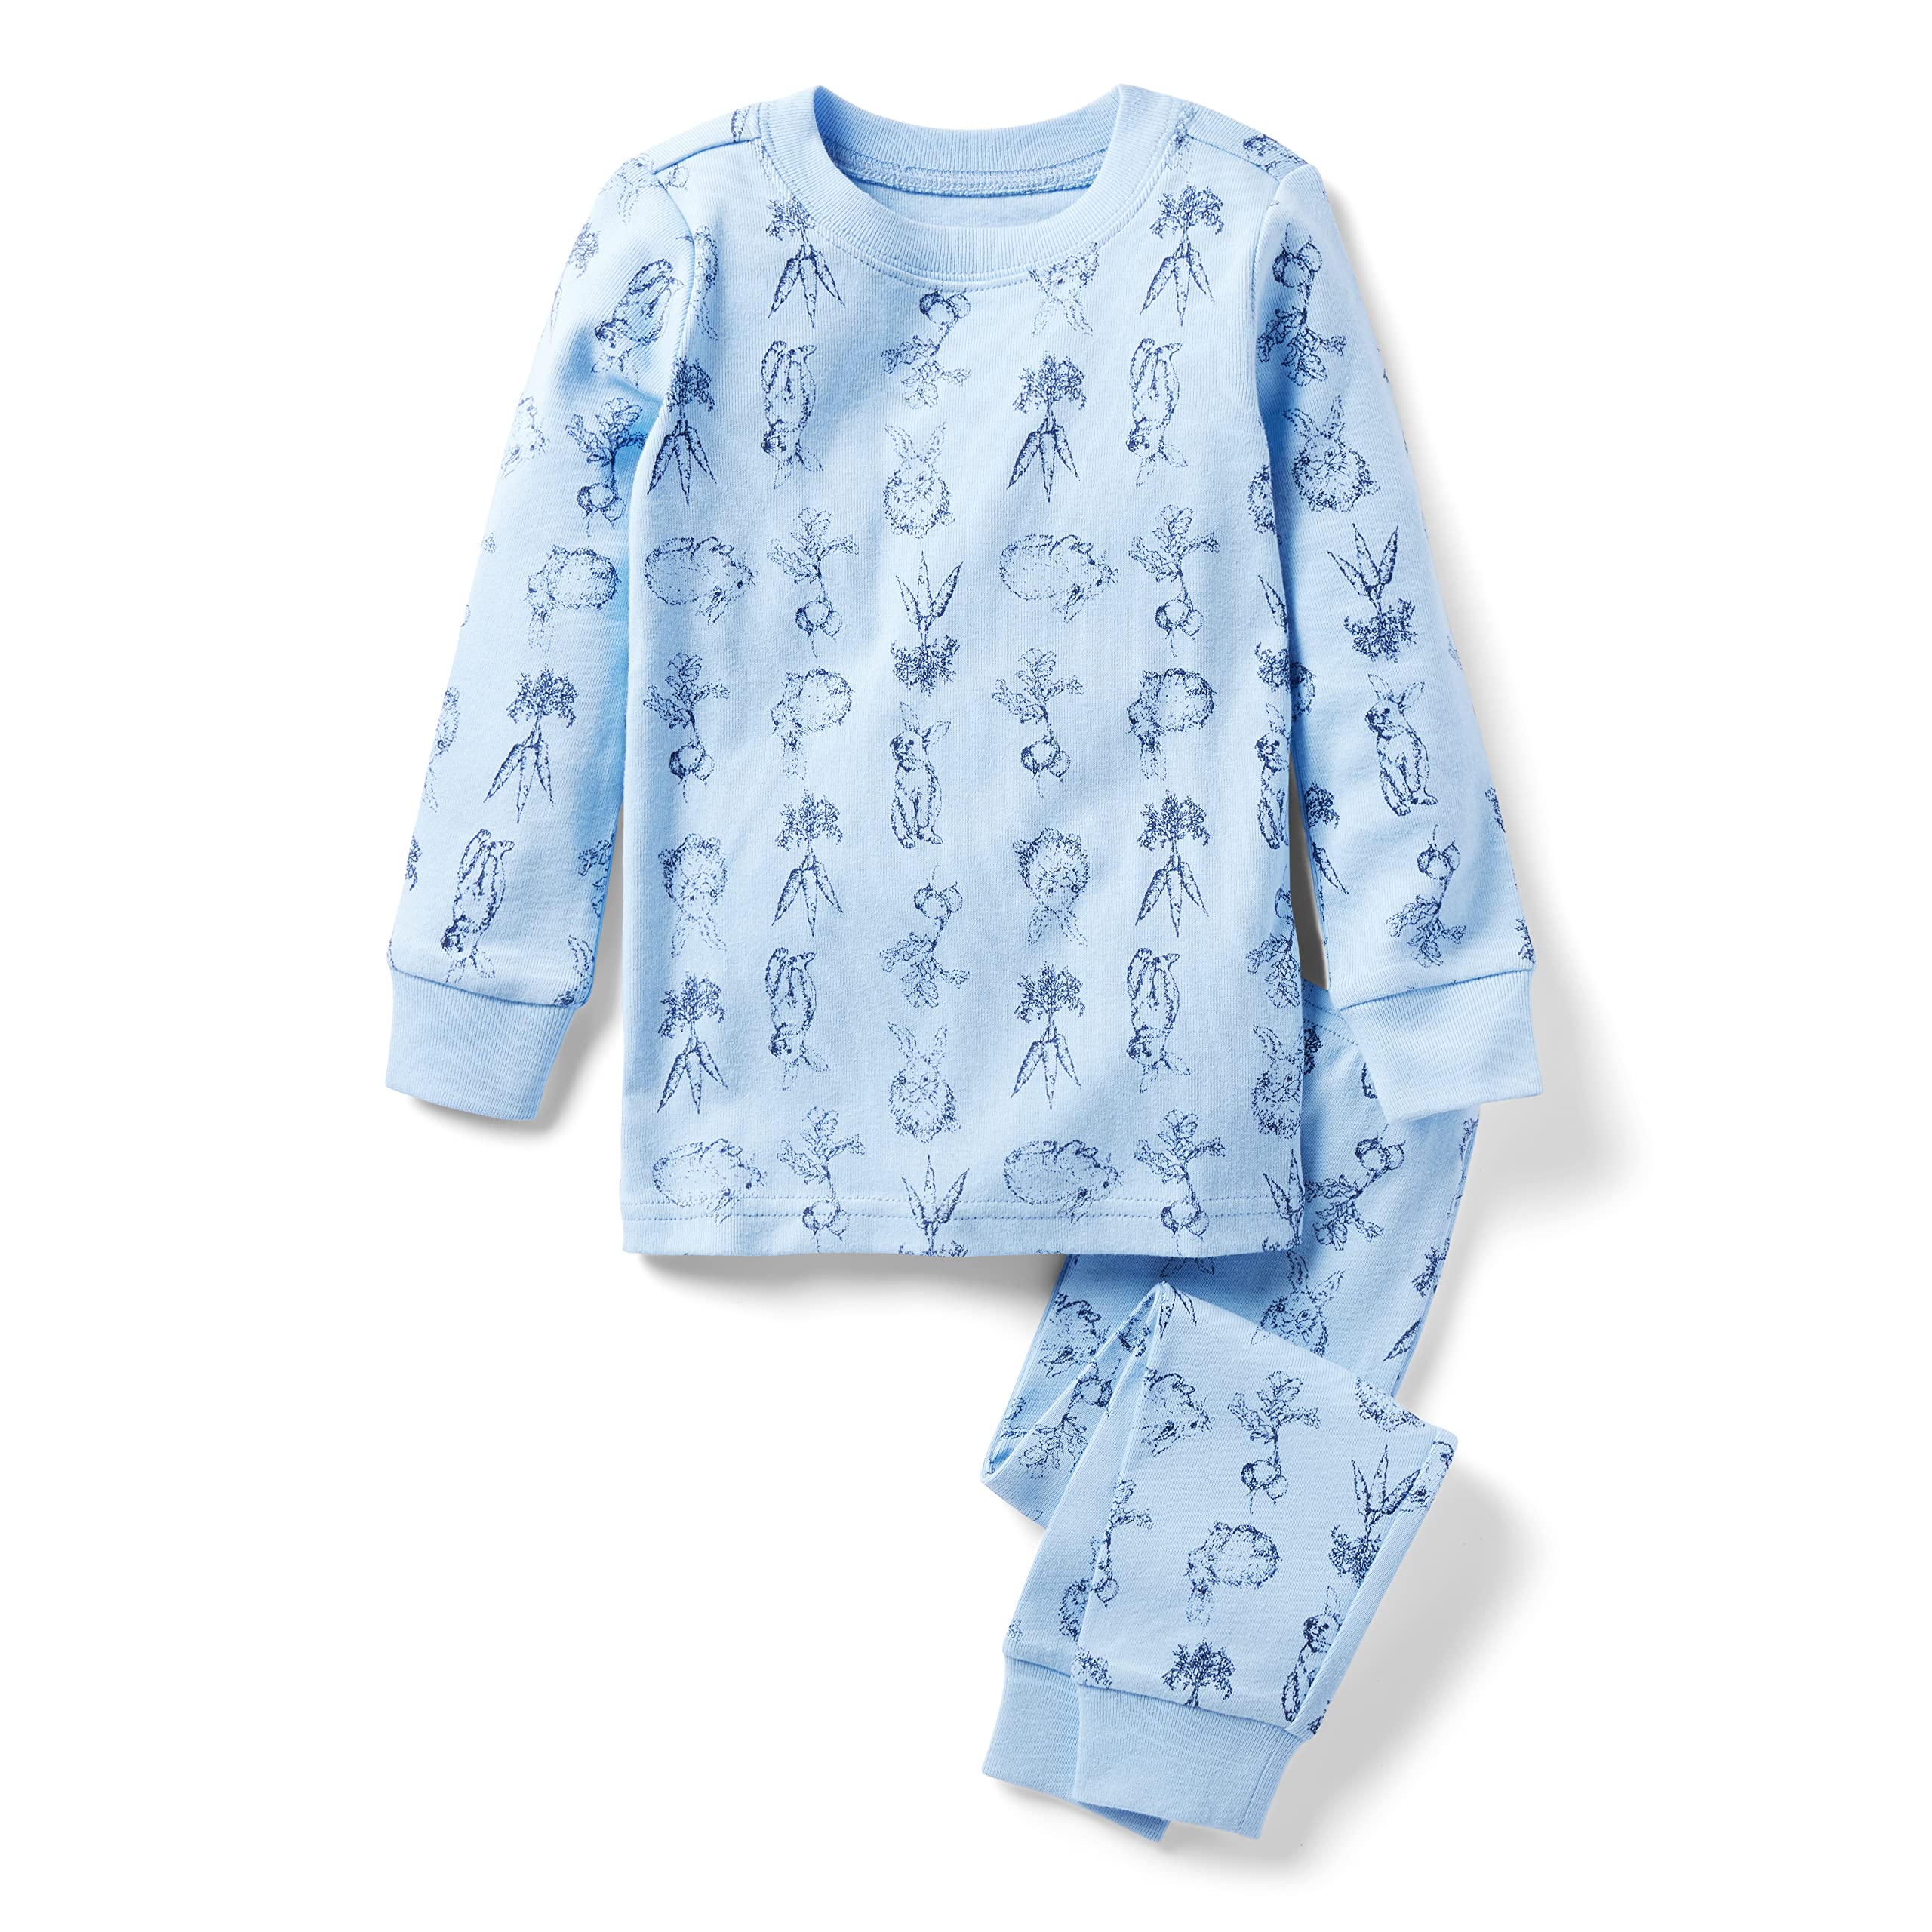 Обтягивающая одежда для сна Bunny (для малышей/маленьких детей/больших детей) Janie and Jack